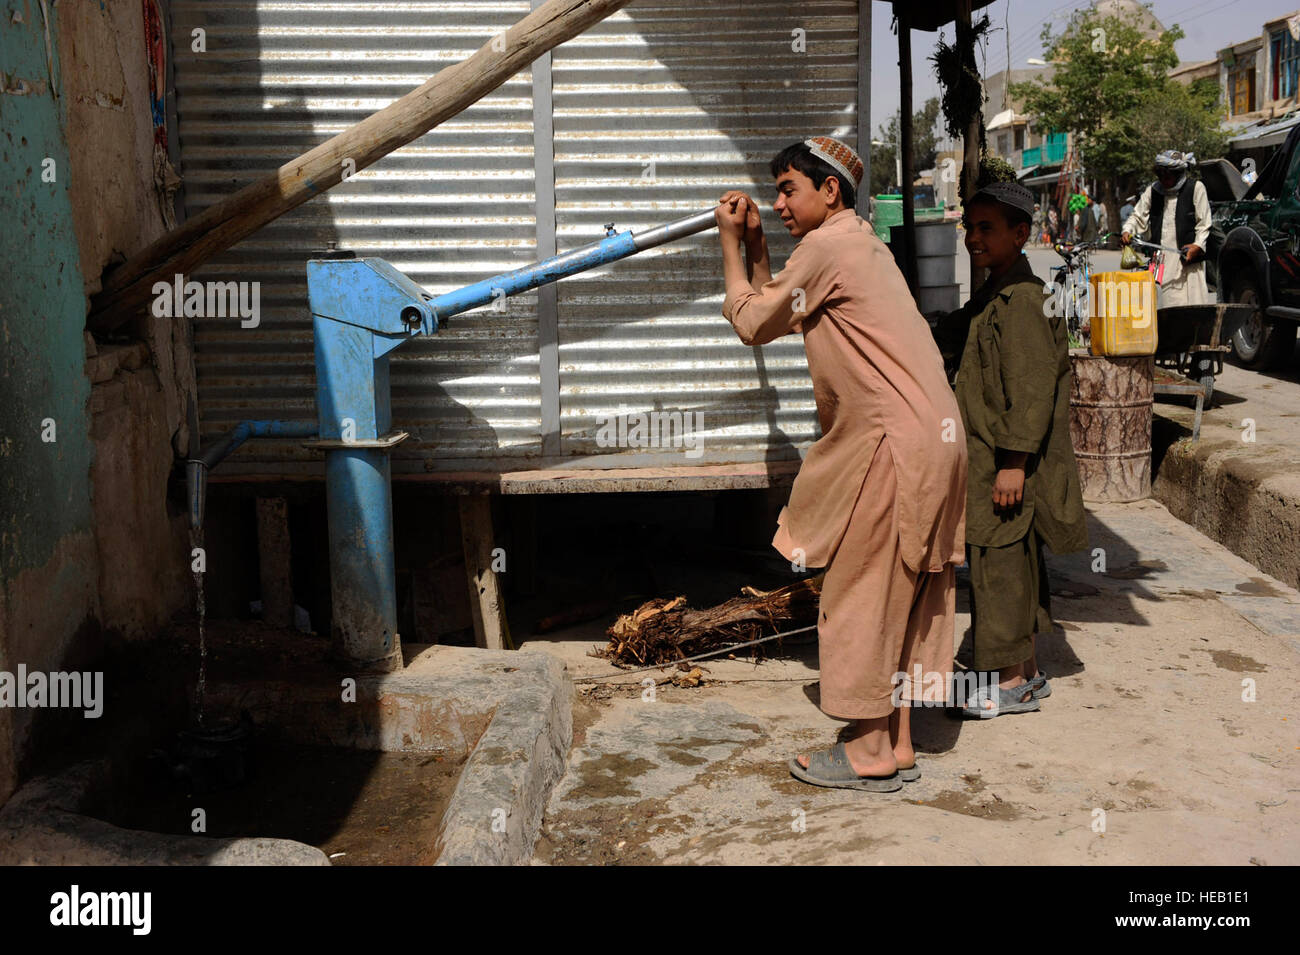 Ragazzi afghani pompa acqua su un bazaar street durante un piede patrol da Provincial Reconstruction Team Zabul aviatori e soldati, 23 maggio, nella città di Qalat, Afghanistan. PRT aviatori facilitare progetti come acqua pulita, un programma che fornisce le famiglie afghane cloro per uccidere i batteri in acqua locale. Foto Stock